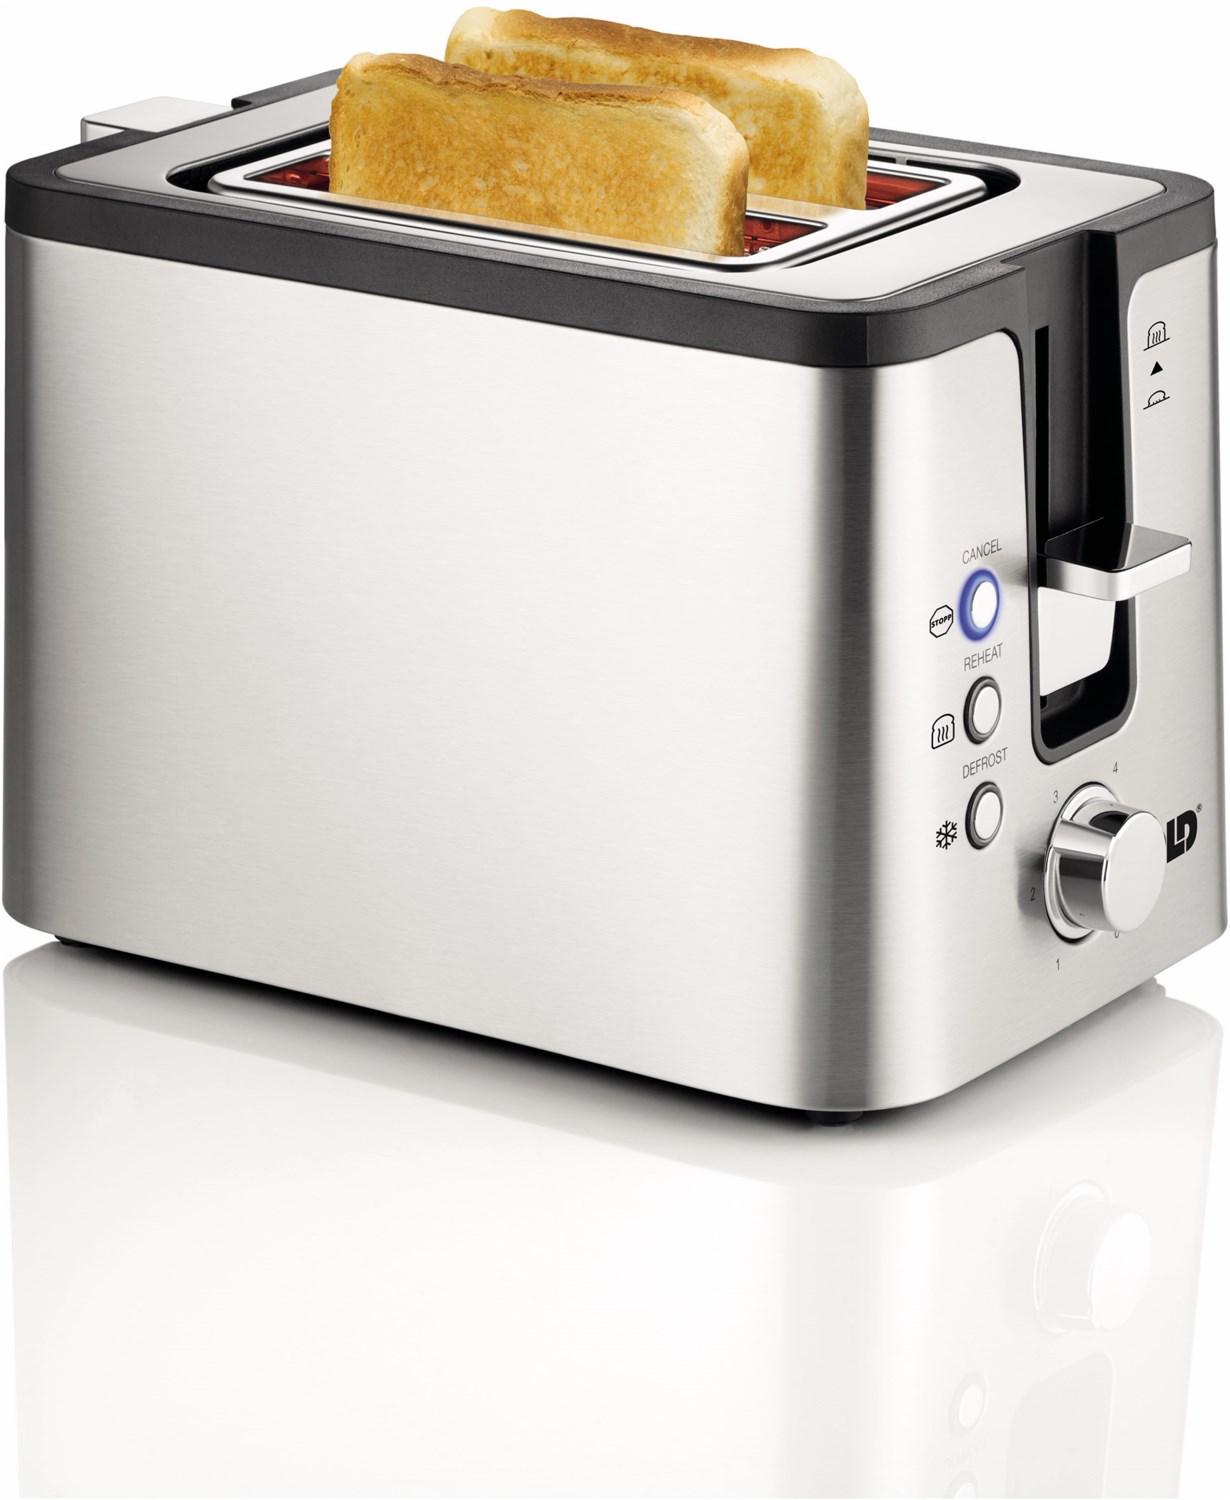 38215 Toaster 2er Kompakt edelstahl/schwarz von Unold